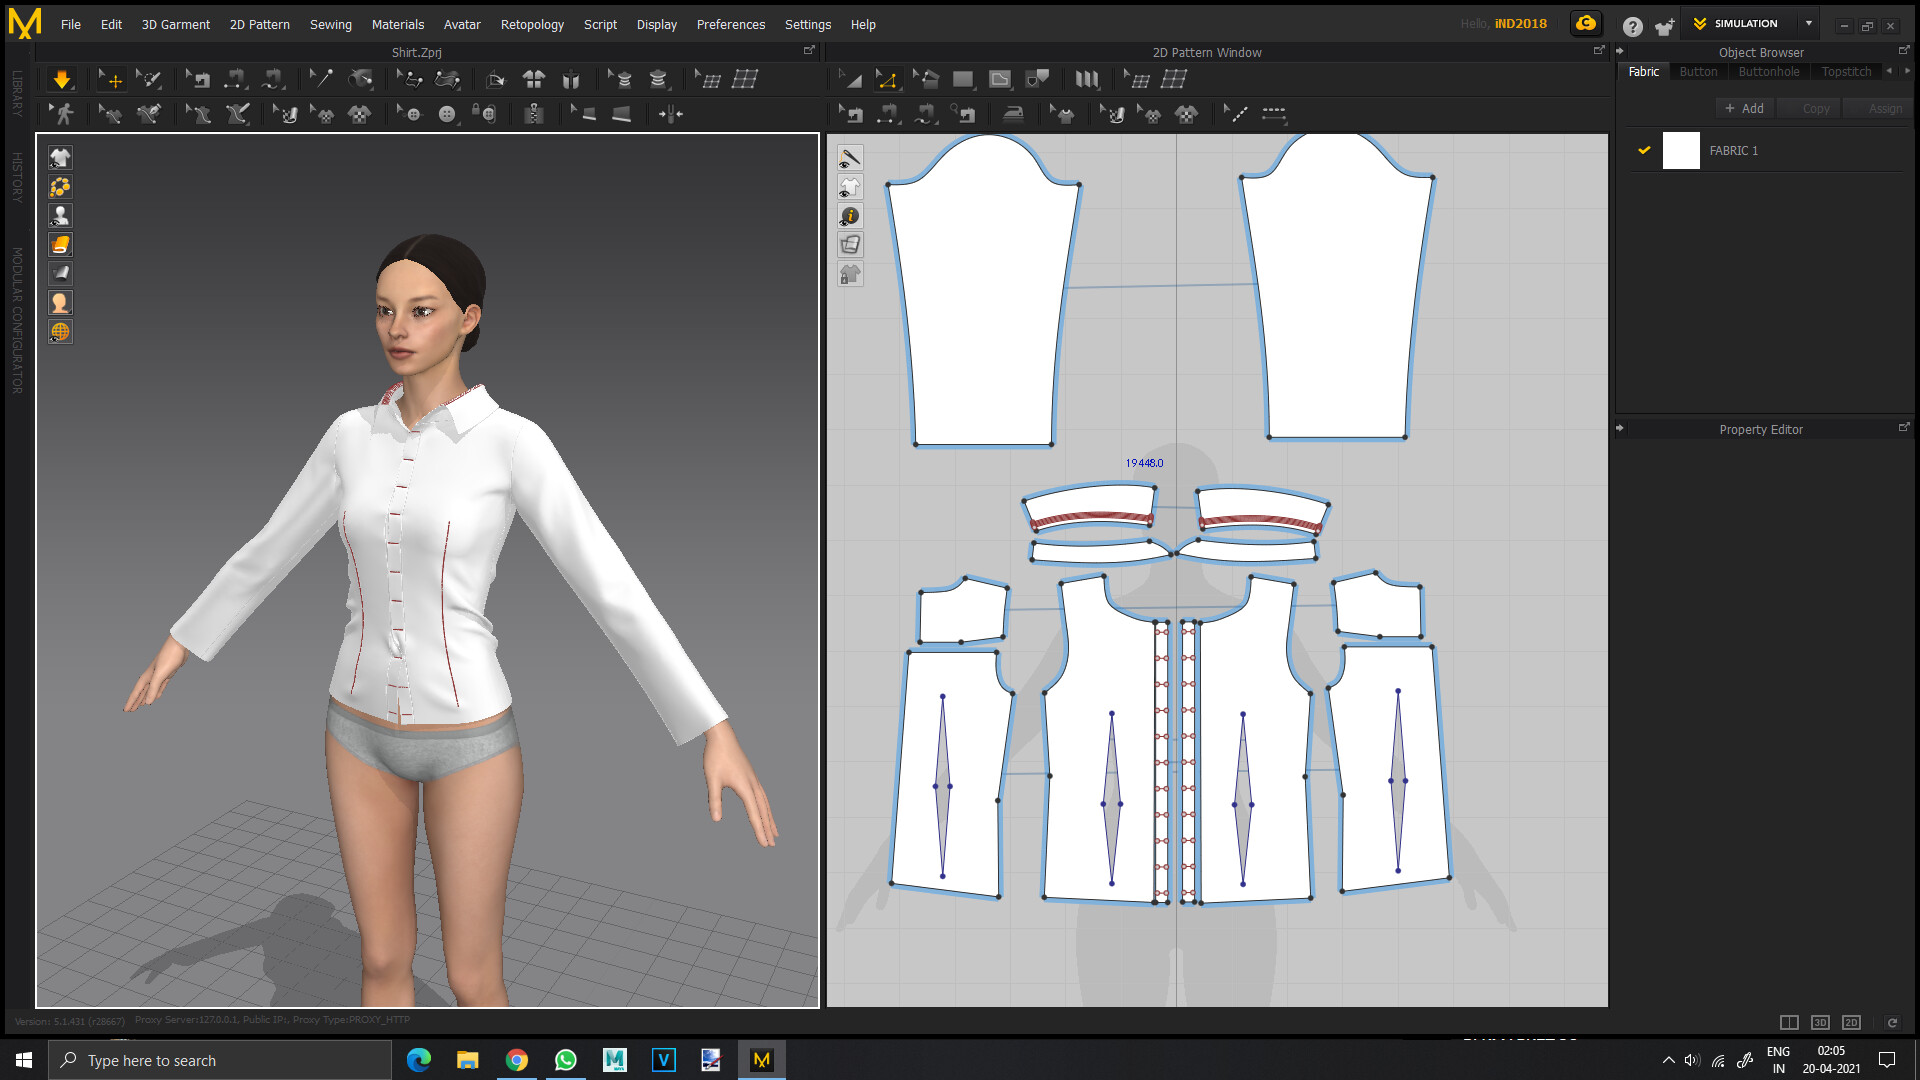 ArtStation - Cloth Simulation - Basic Fit Shirt